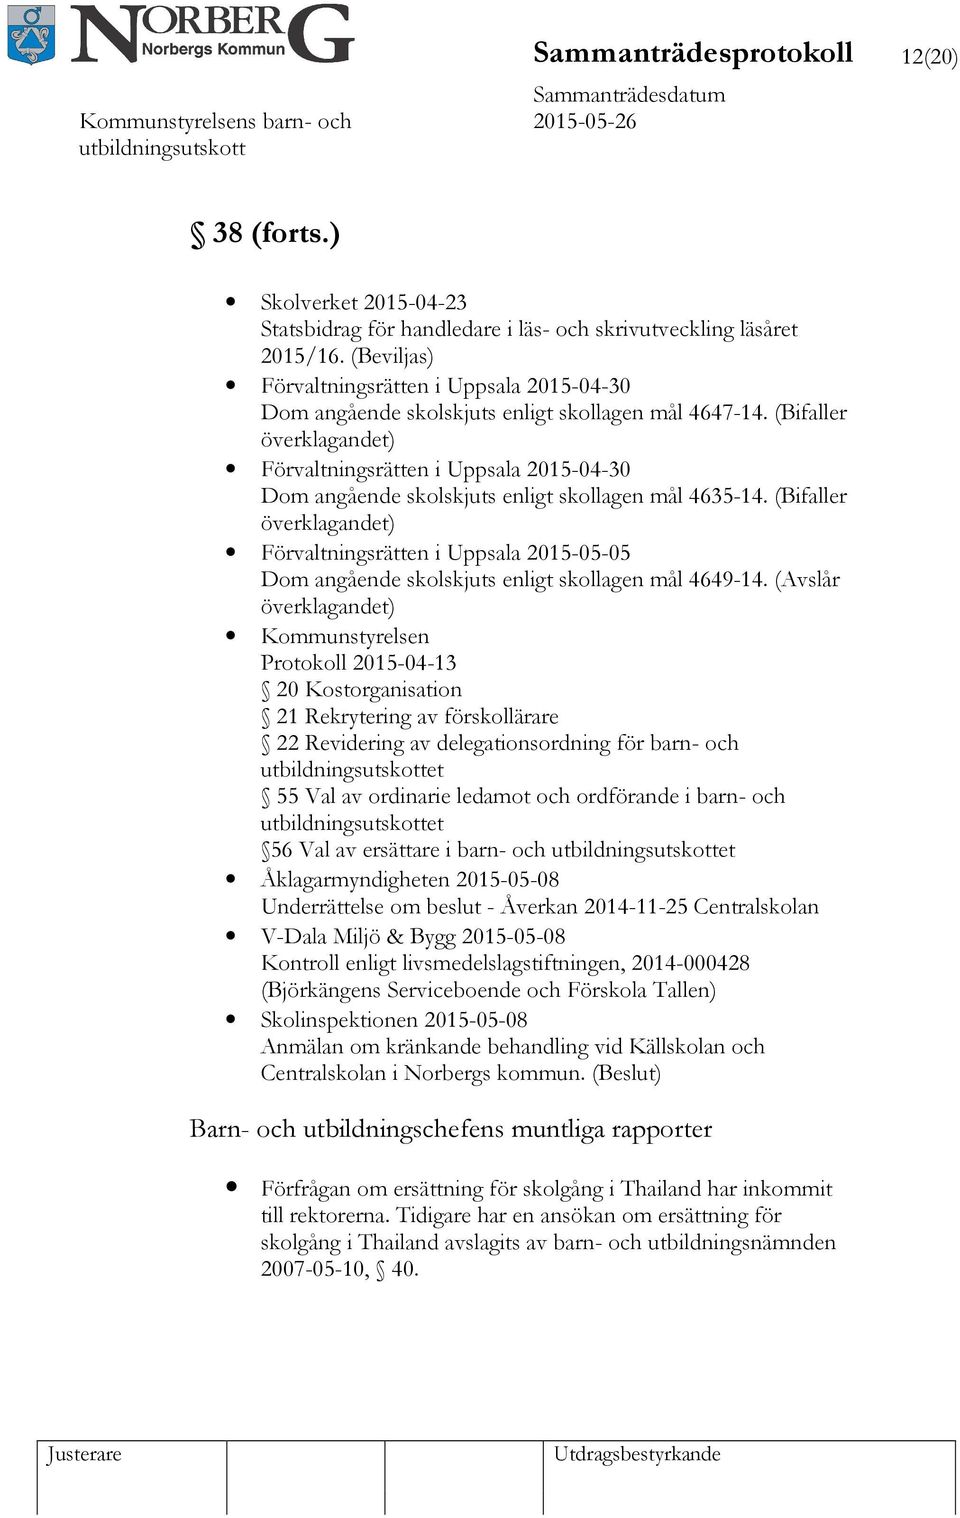 (Bifaller överklagandet) Förvaltningsrätten i Uppsala 2015-04-30 Dom angående skolskjuts enligt skollagen mål 4635-14.